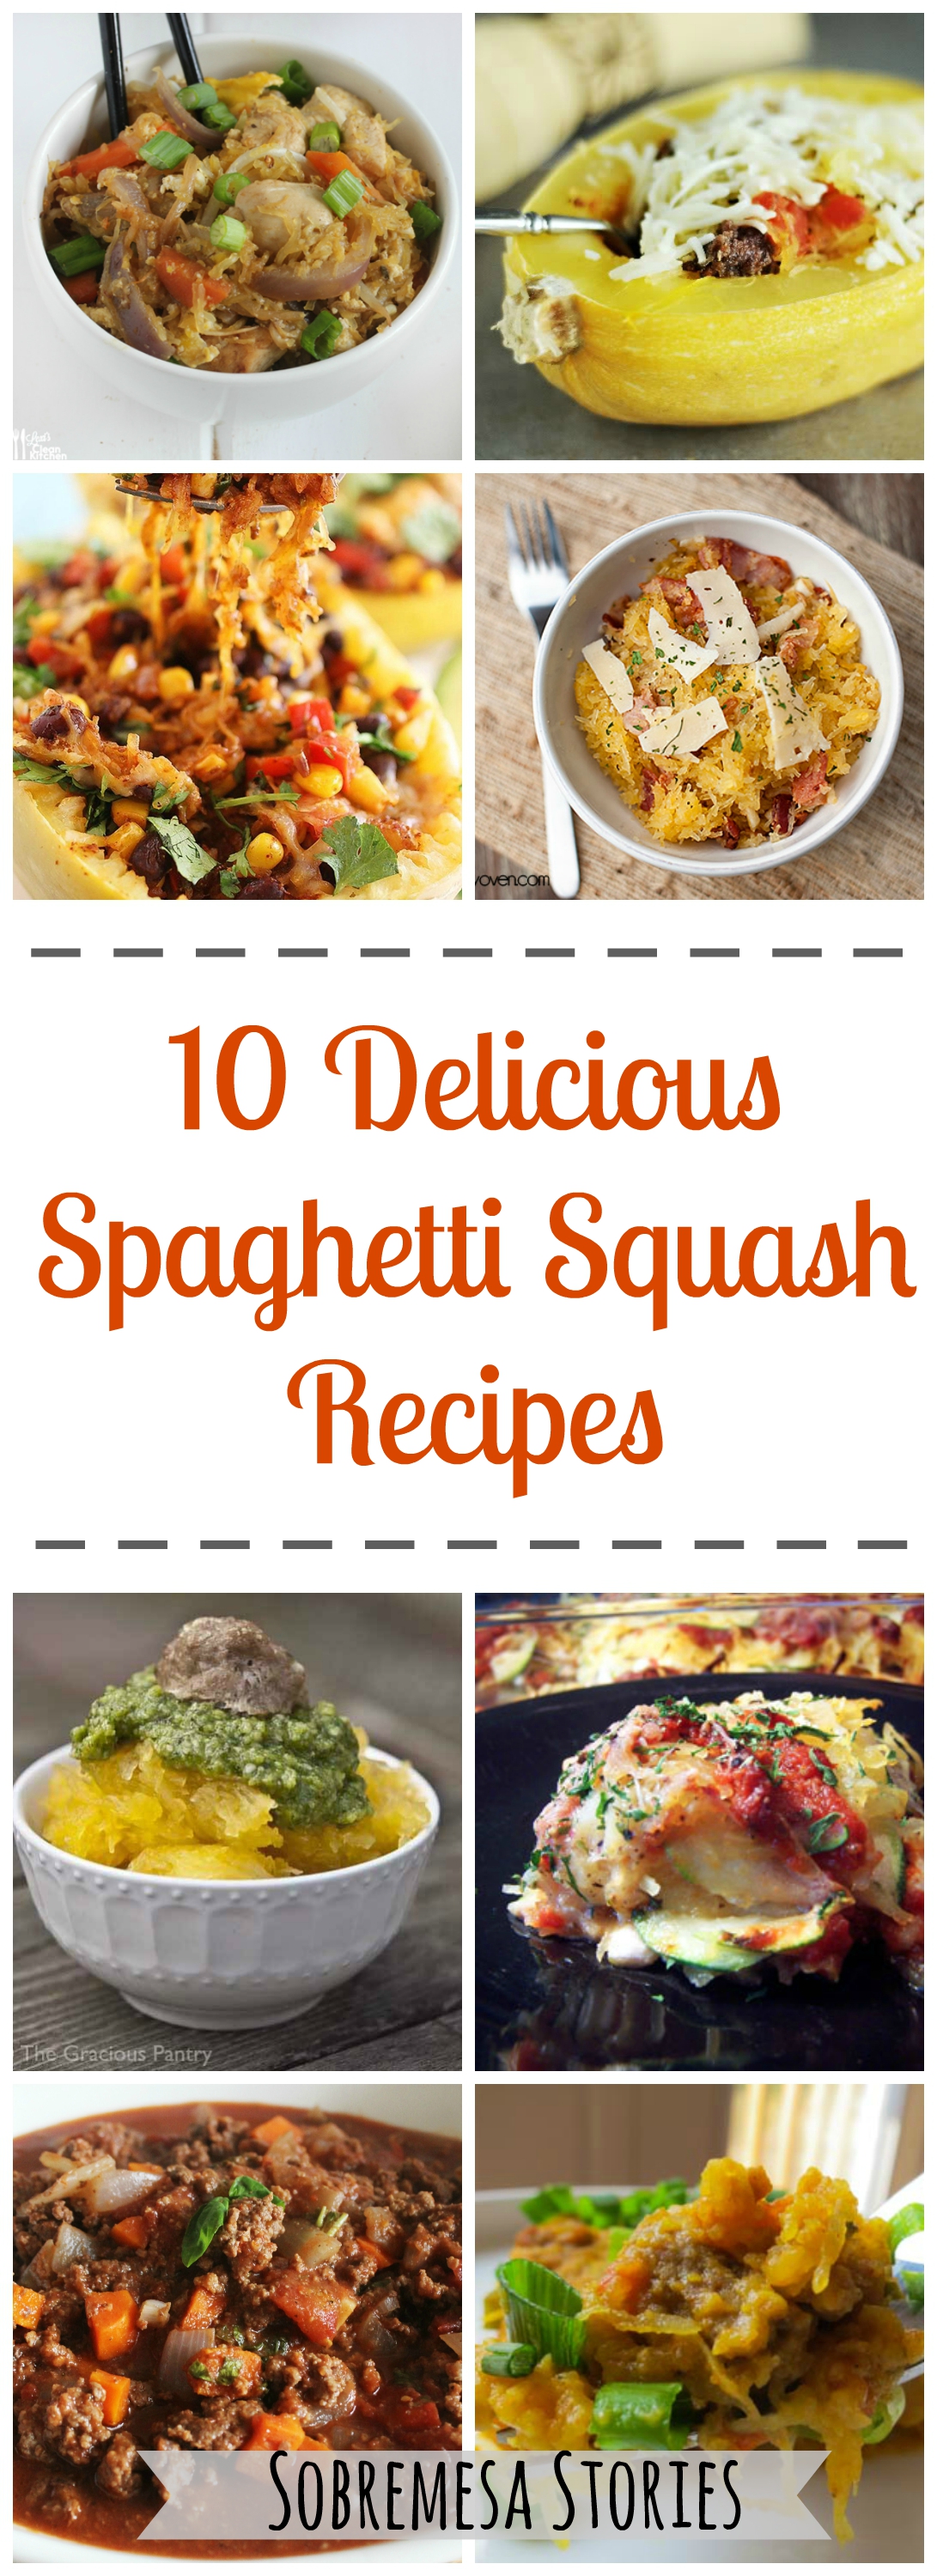 10 Delicious Spaghetti Squash Recipes - Sobremesa Stories